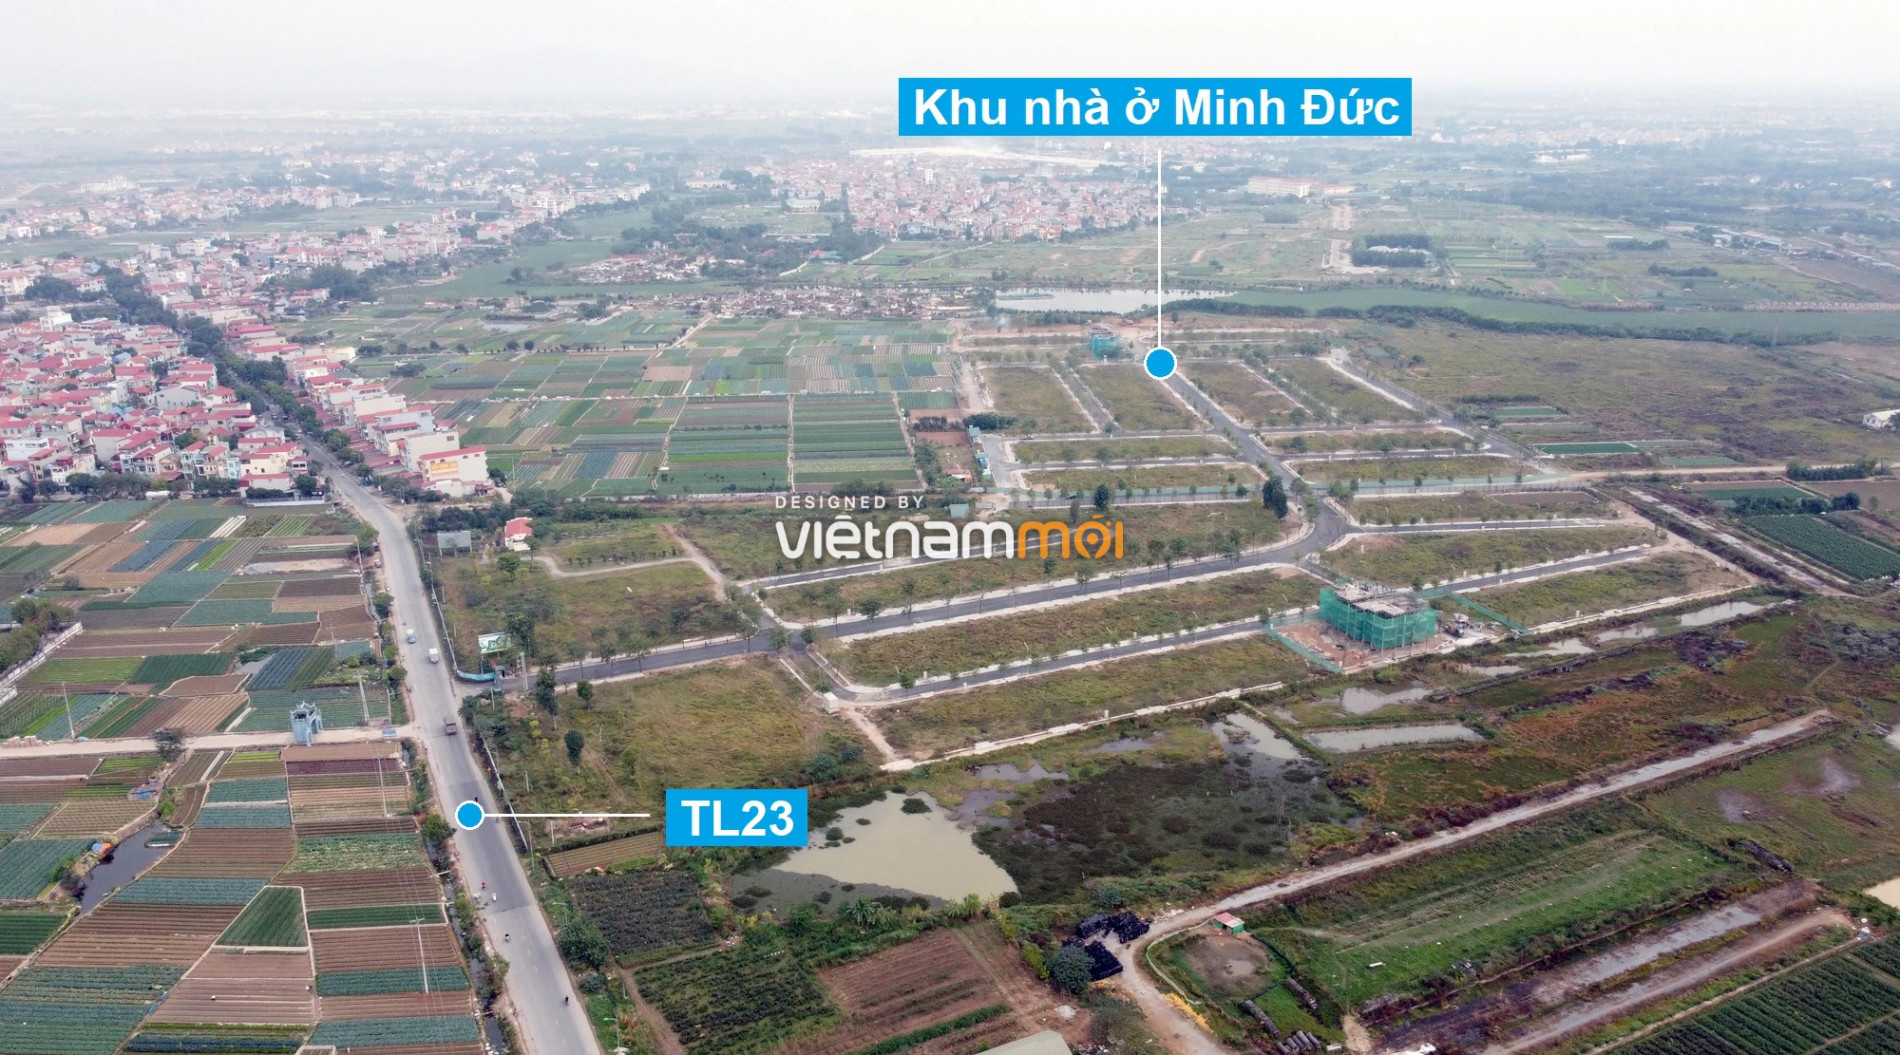 Toàn cảnh 6 dự án chậm triển khai ở huyện Mê Linh sắp tái triển khai - Ảnh 1.